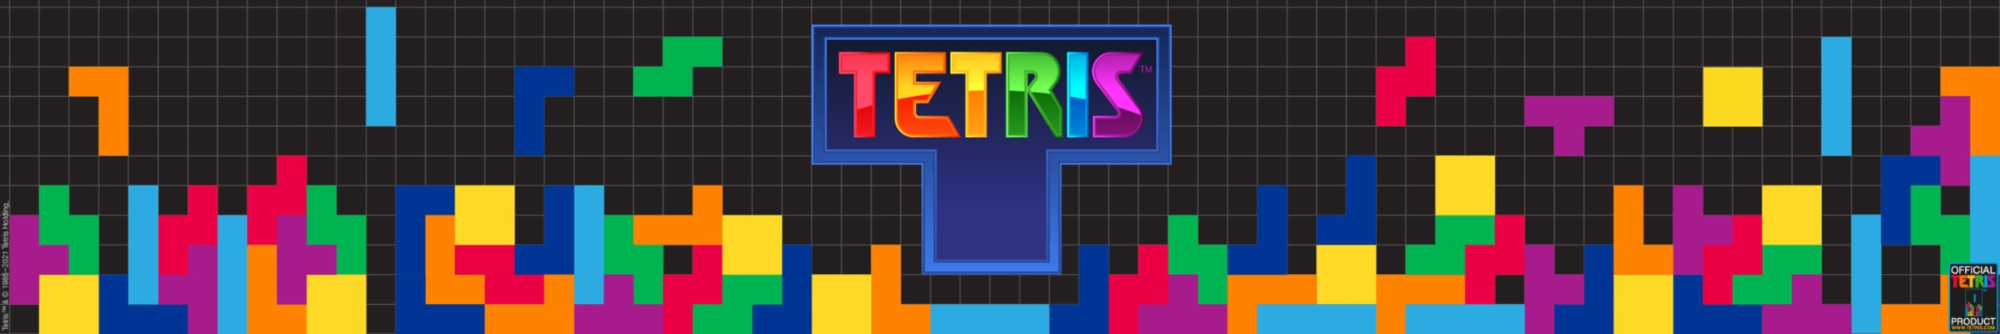 Galleria - Tetris